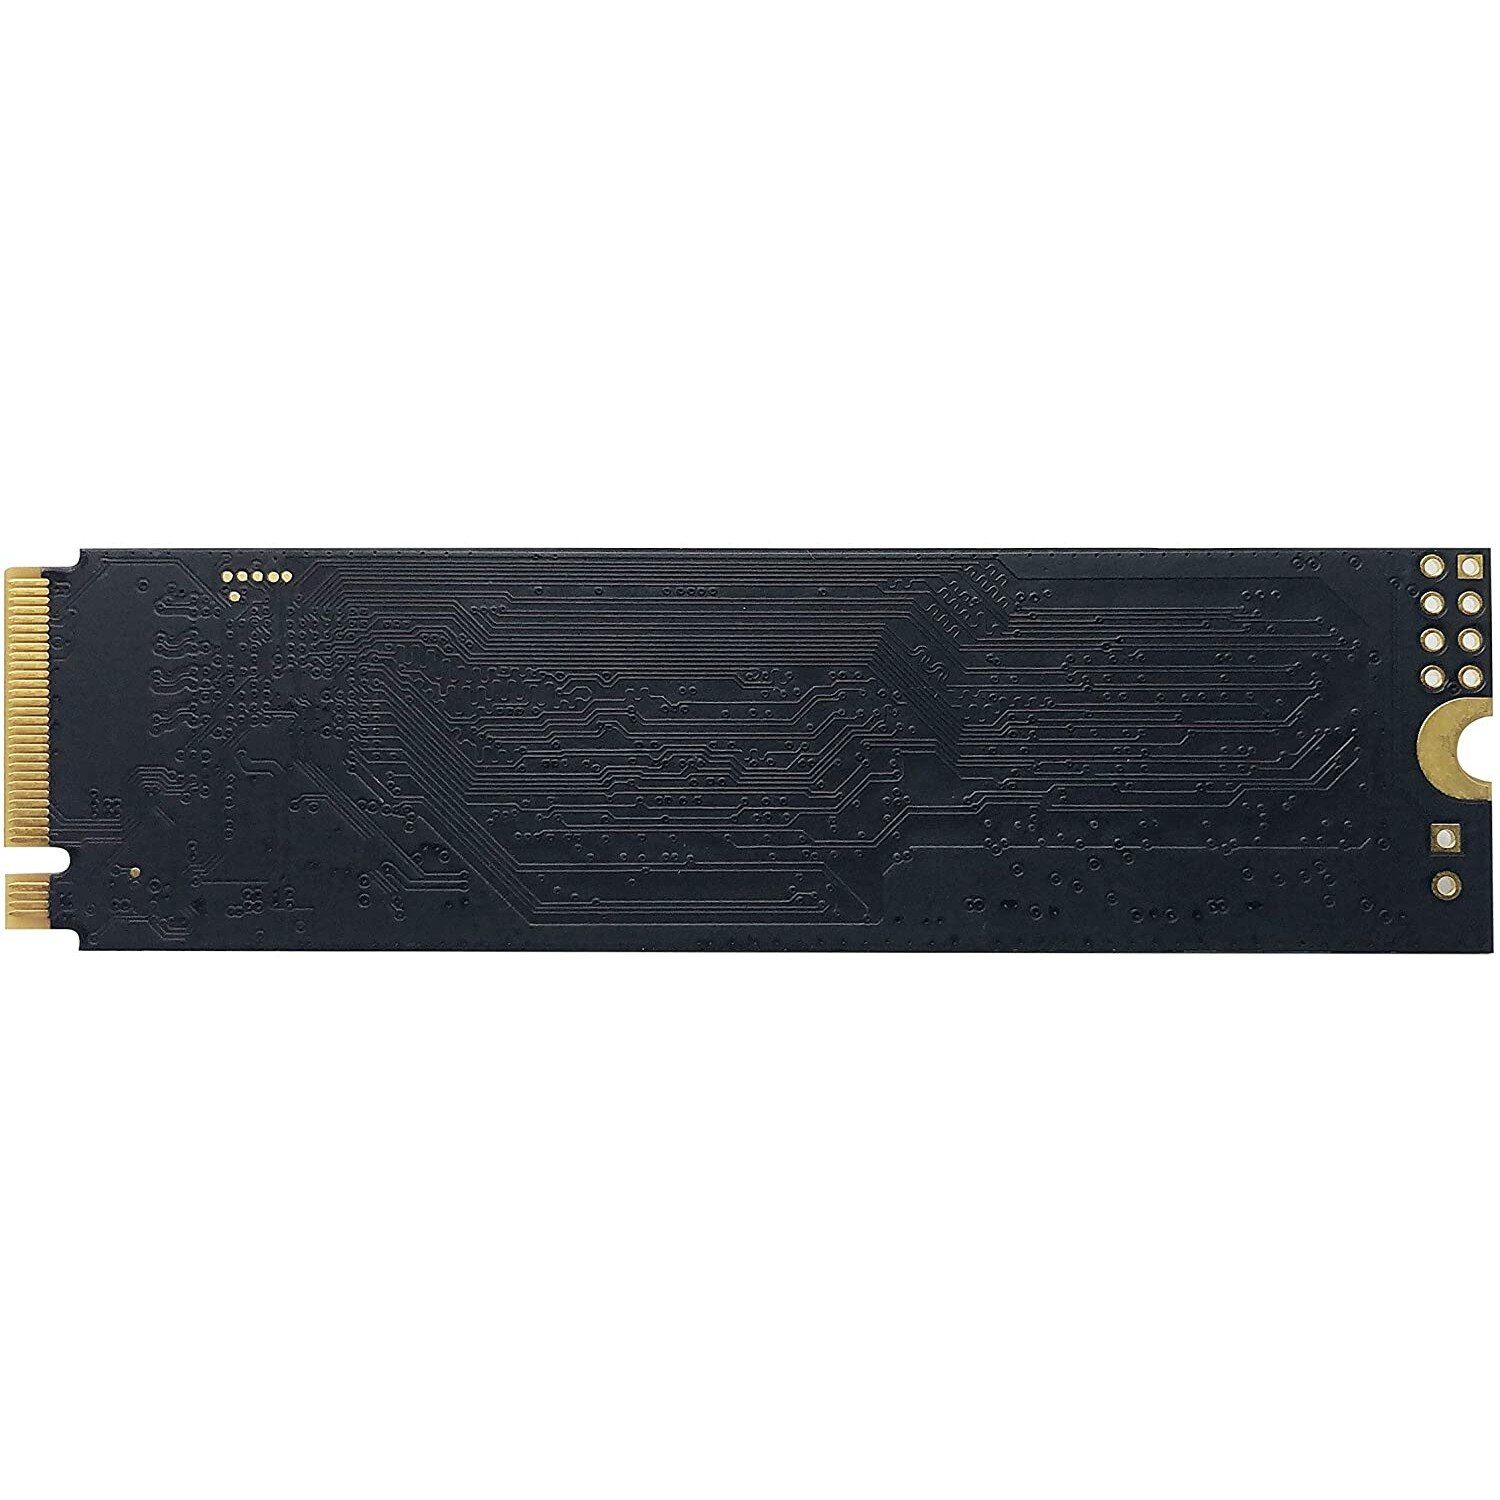 PATRIOT P300 256GB M2 2280 PCIe SSD_5